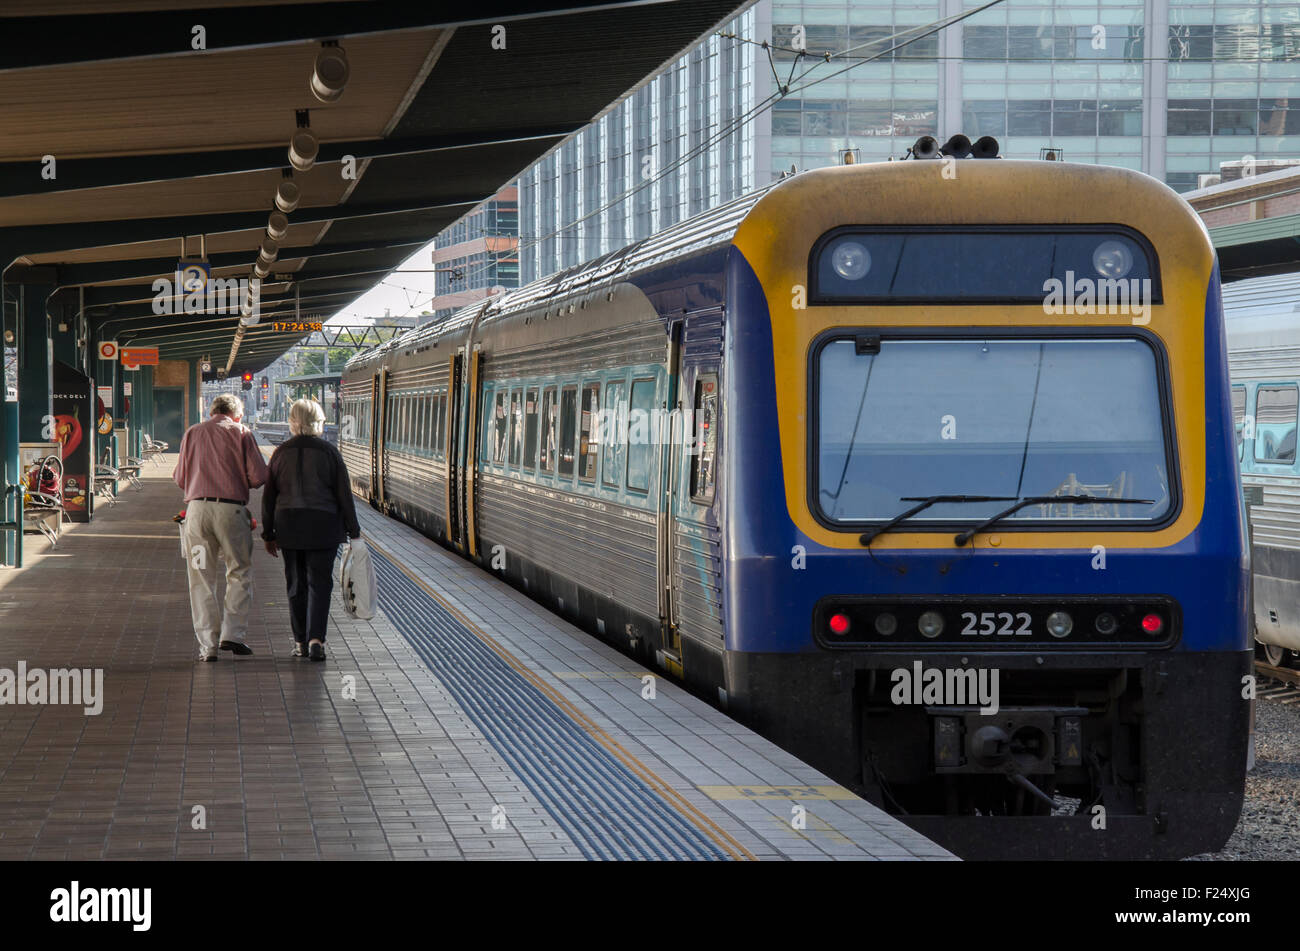 Deux personnes âgées descendent une plate-forme de chemin de fer vers un train d'attente.Le train est un service de locomotive de classe diesel Endeavour de Sydney. Banque D'Images